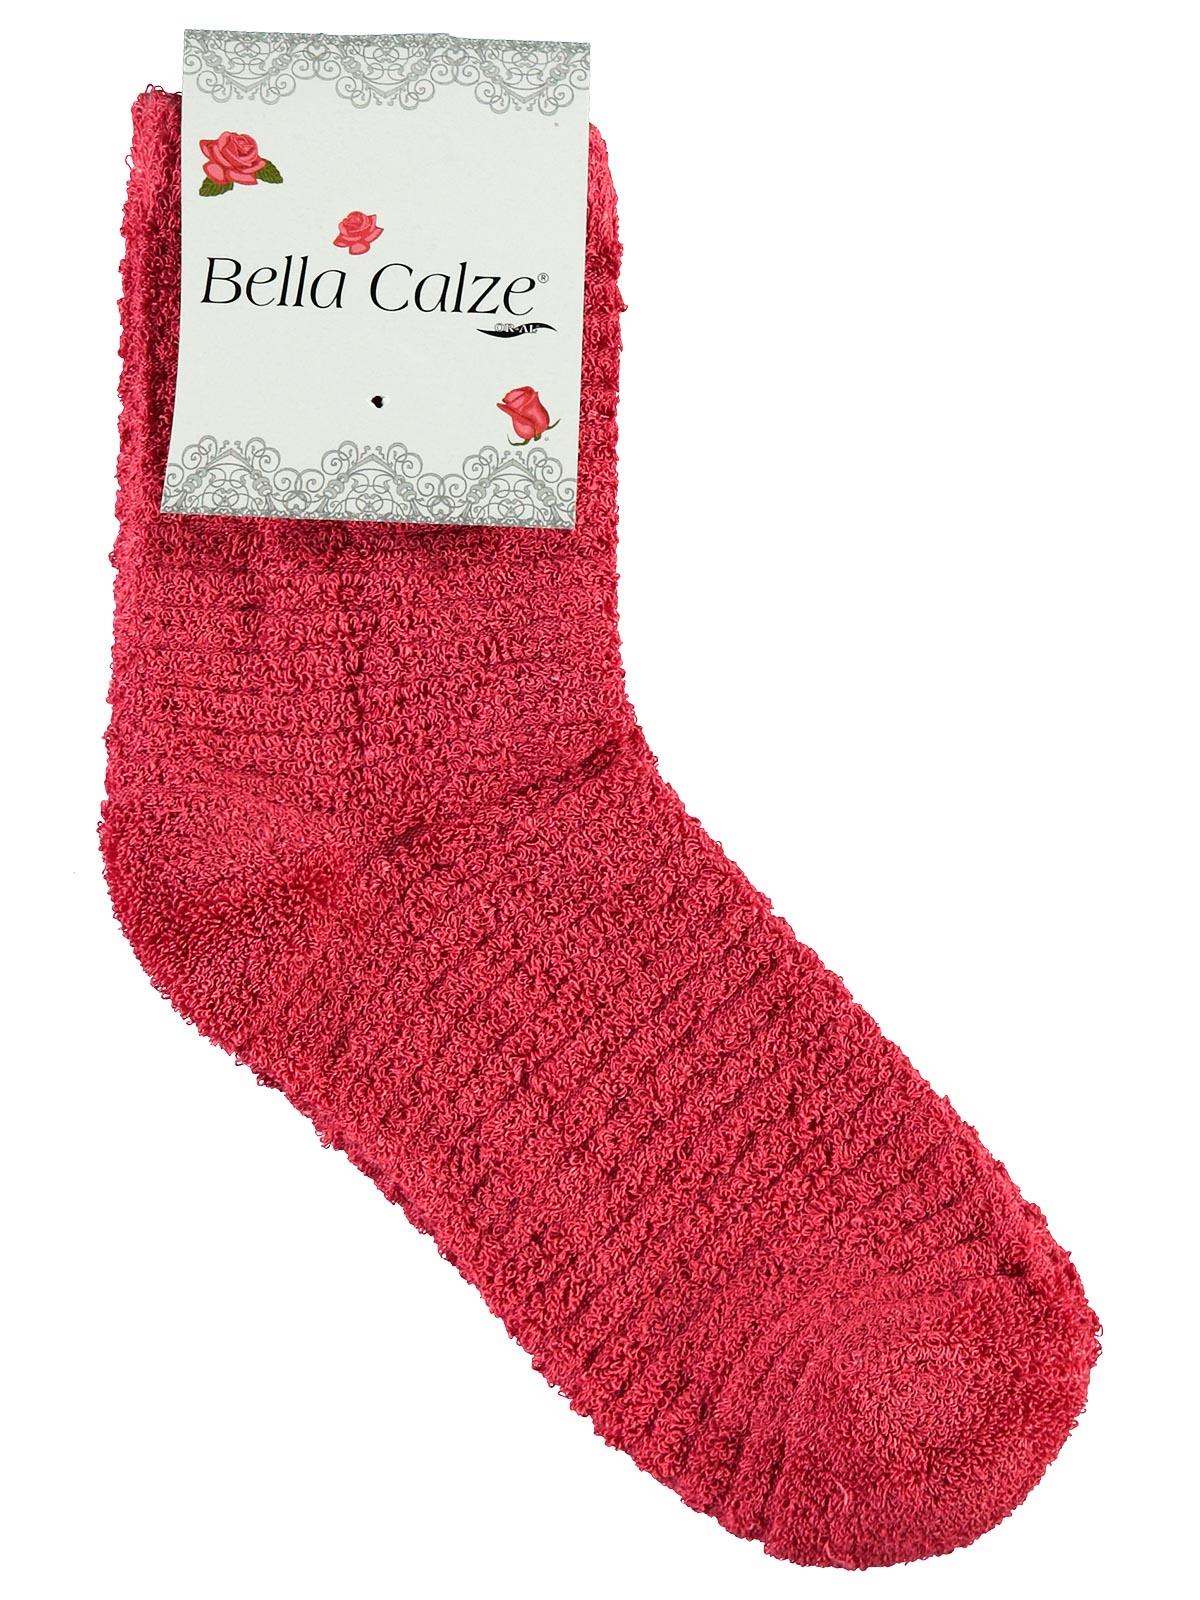 Bella Calze Kız Çocuk Ters Havlu Soket Çorap 36-40 Numara Narçiçeği